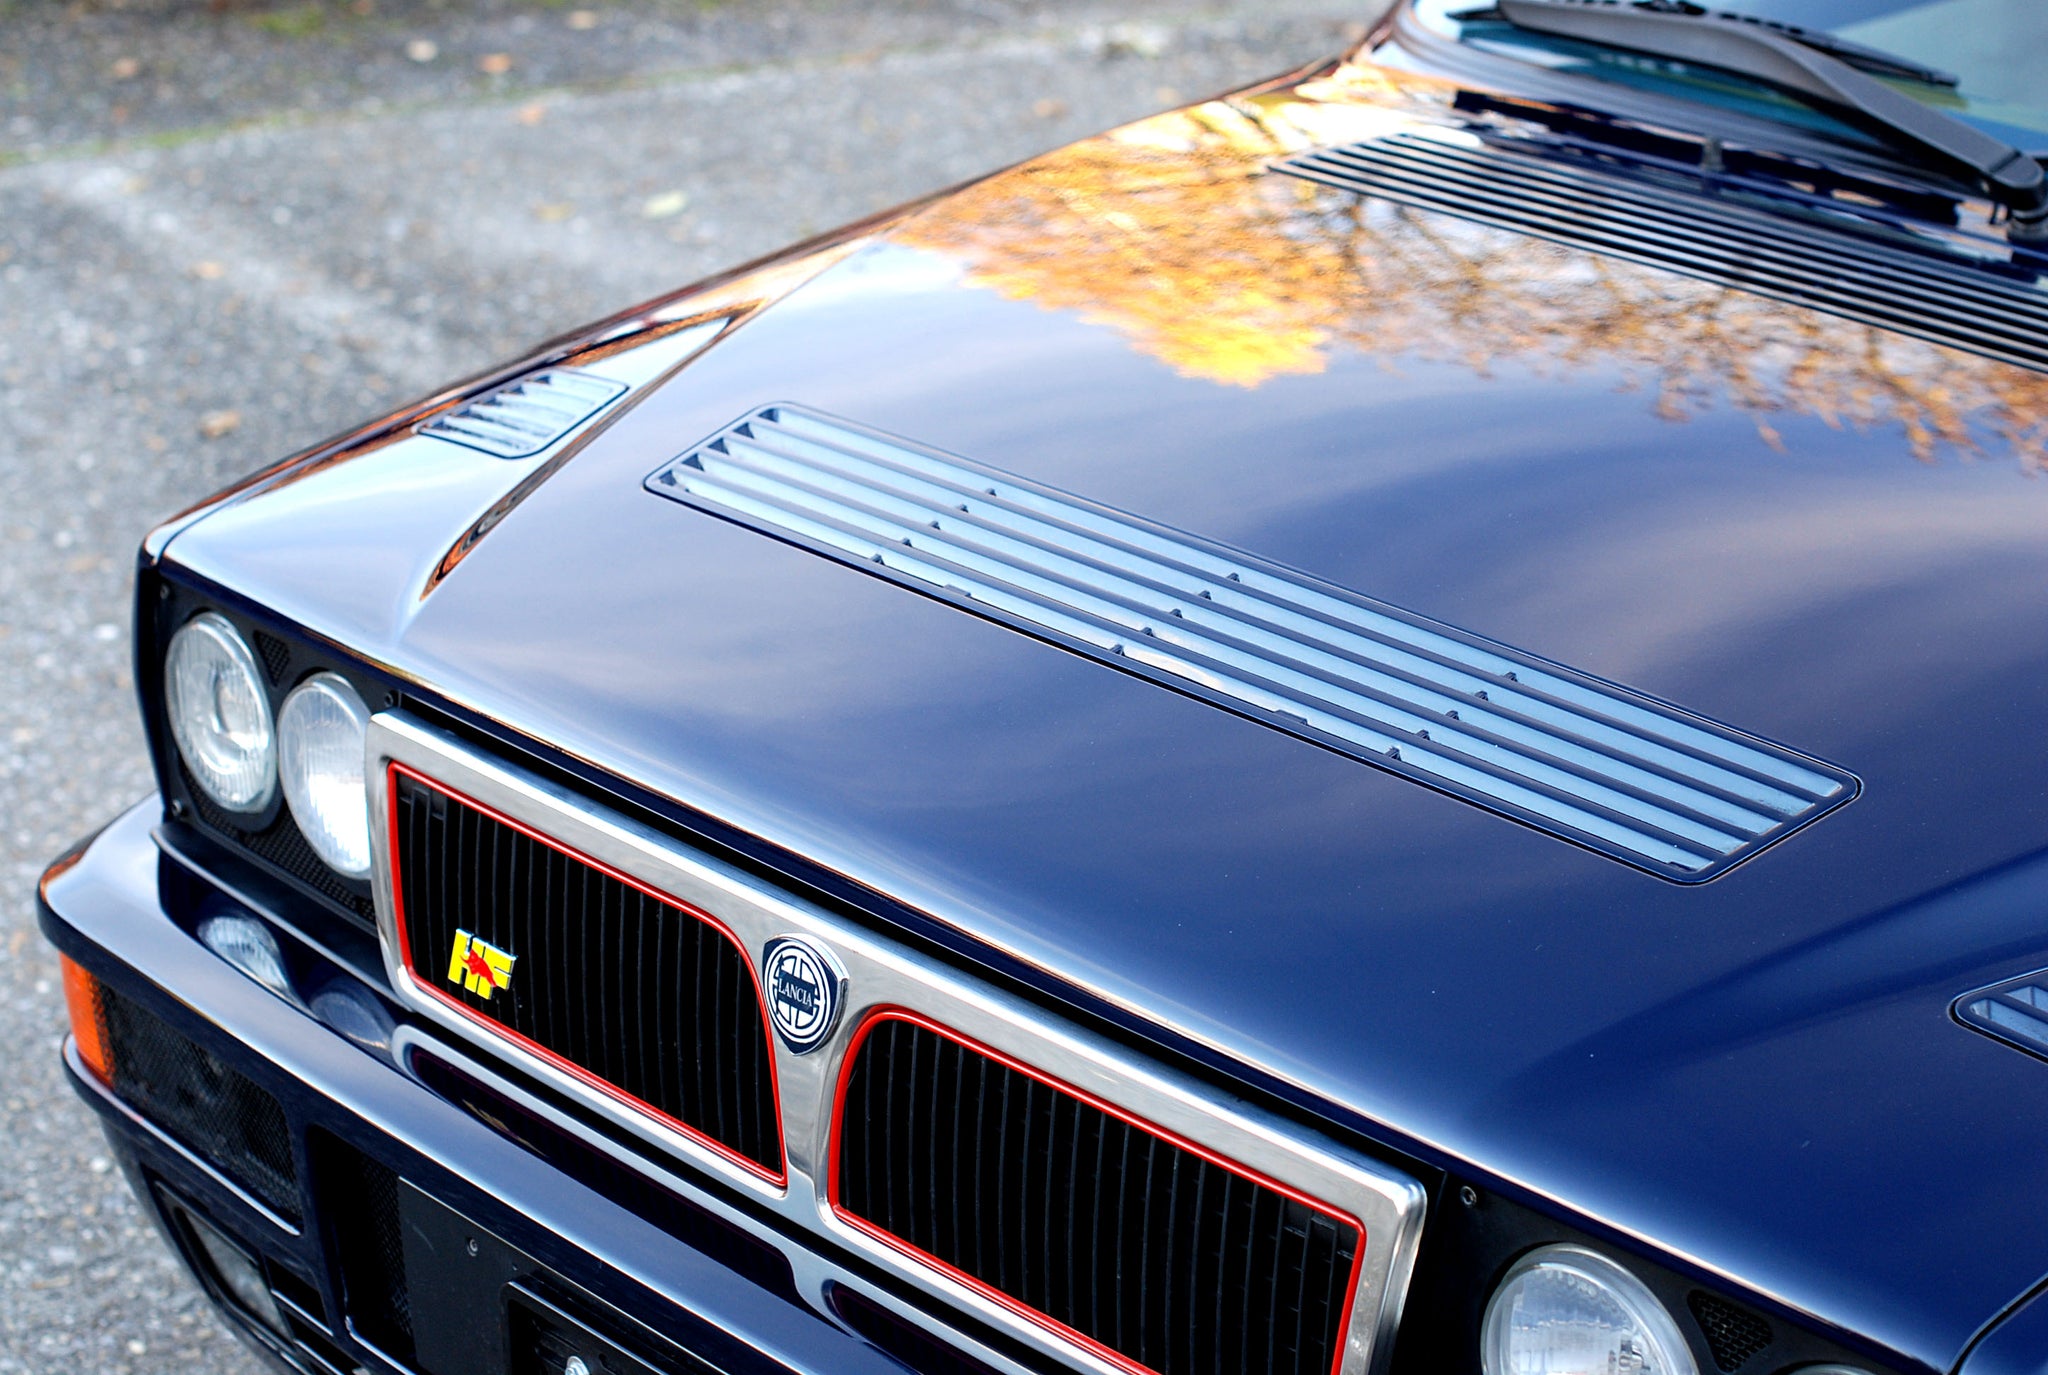 Lancia Delta zu verkaufen - For Sale Blu Lord